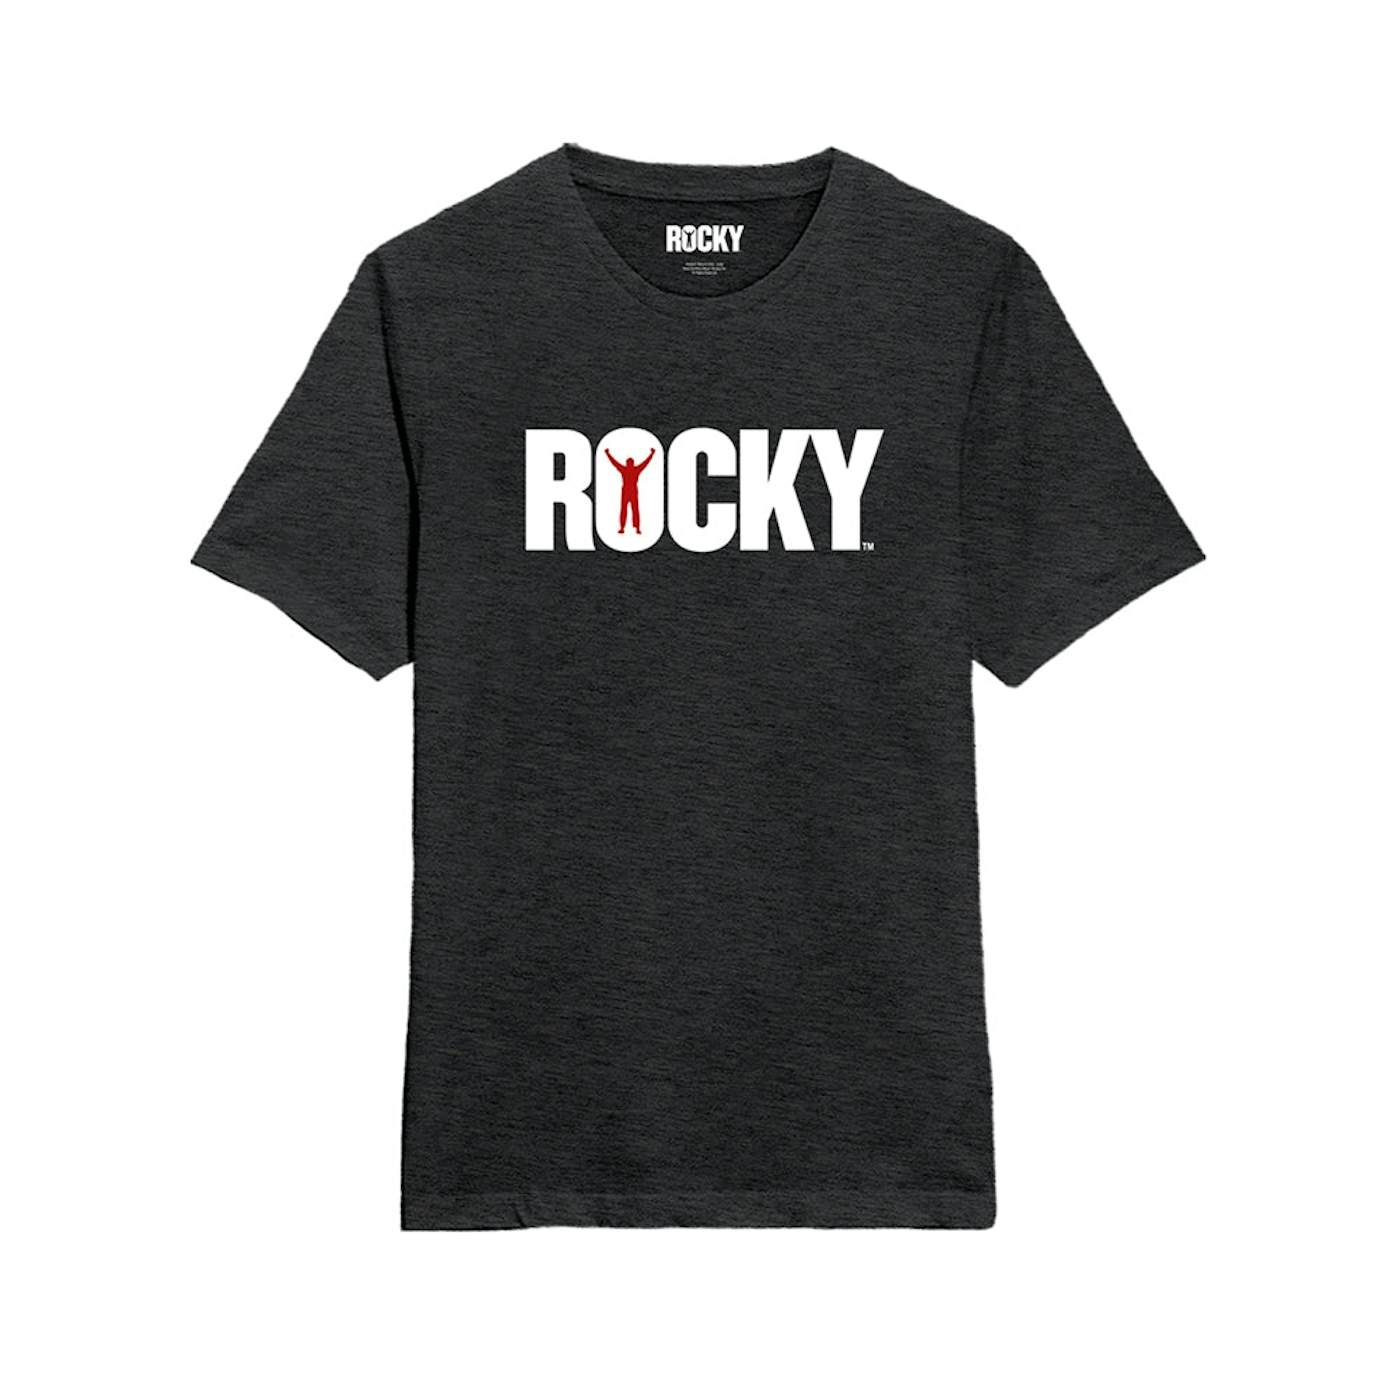 Rockyst - Classic (Rocky)